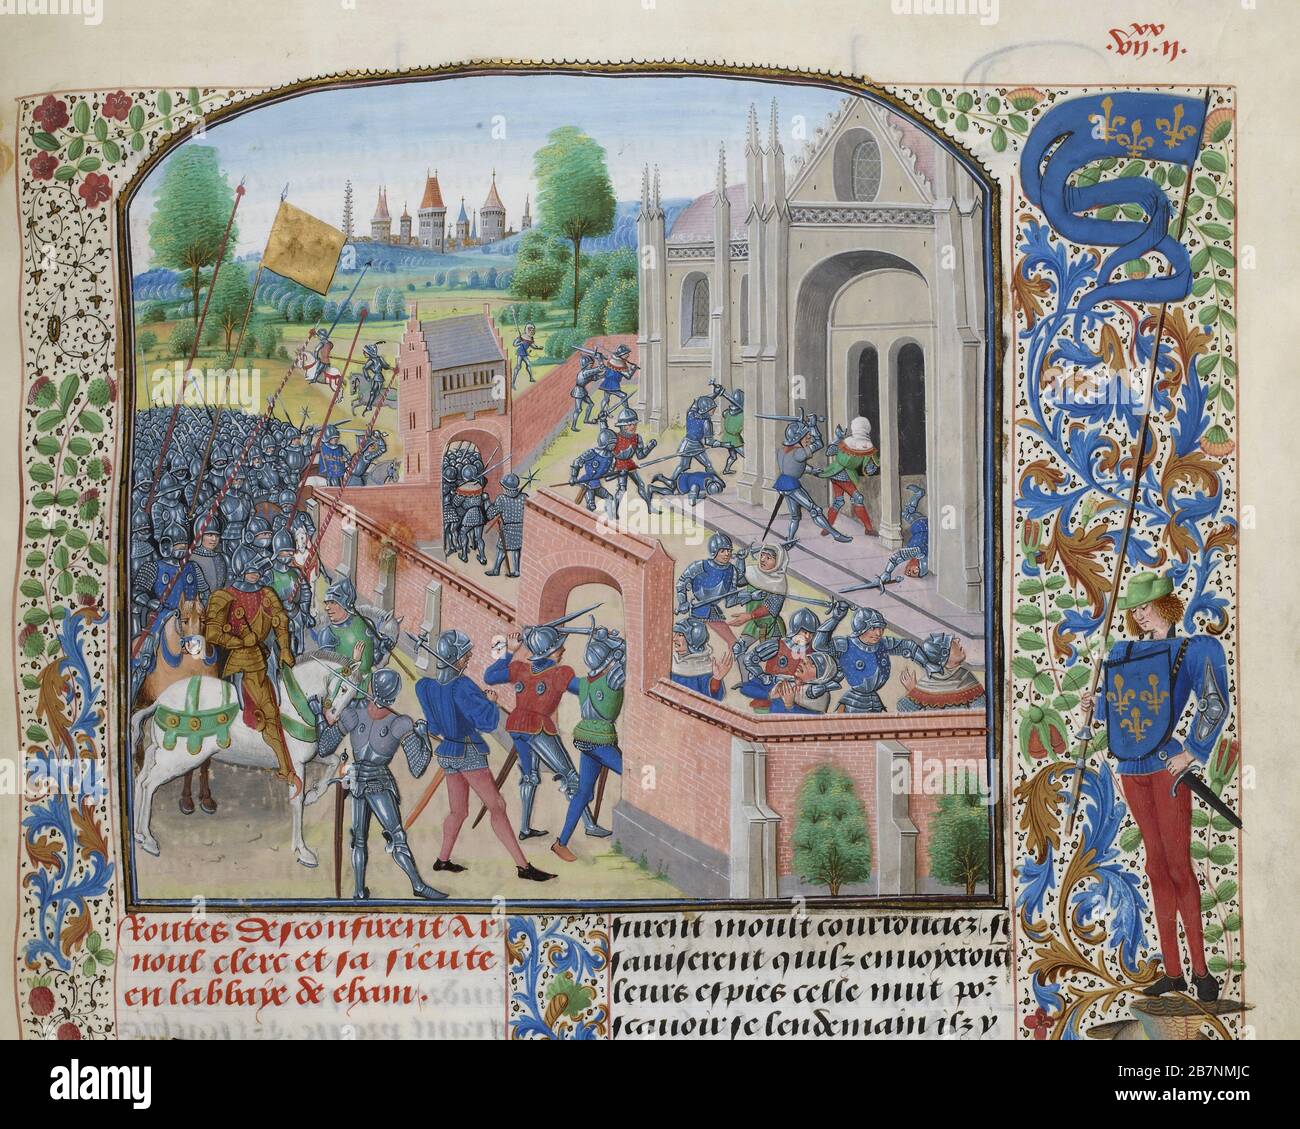 Presa dell'Abbazia dell'Ename, 1381 (miniatura delle Grandes Chroniques de France di Jean Froissart), ca 1470-1475. Trovato nella Collezione di Biblioth&.xe8;que Nationale de France. Foto Stock